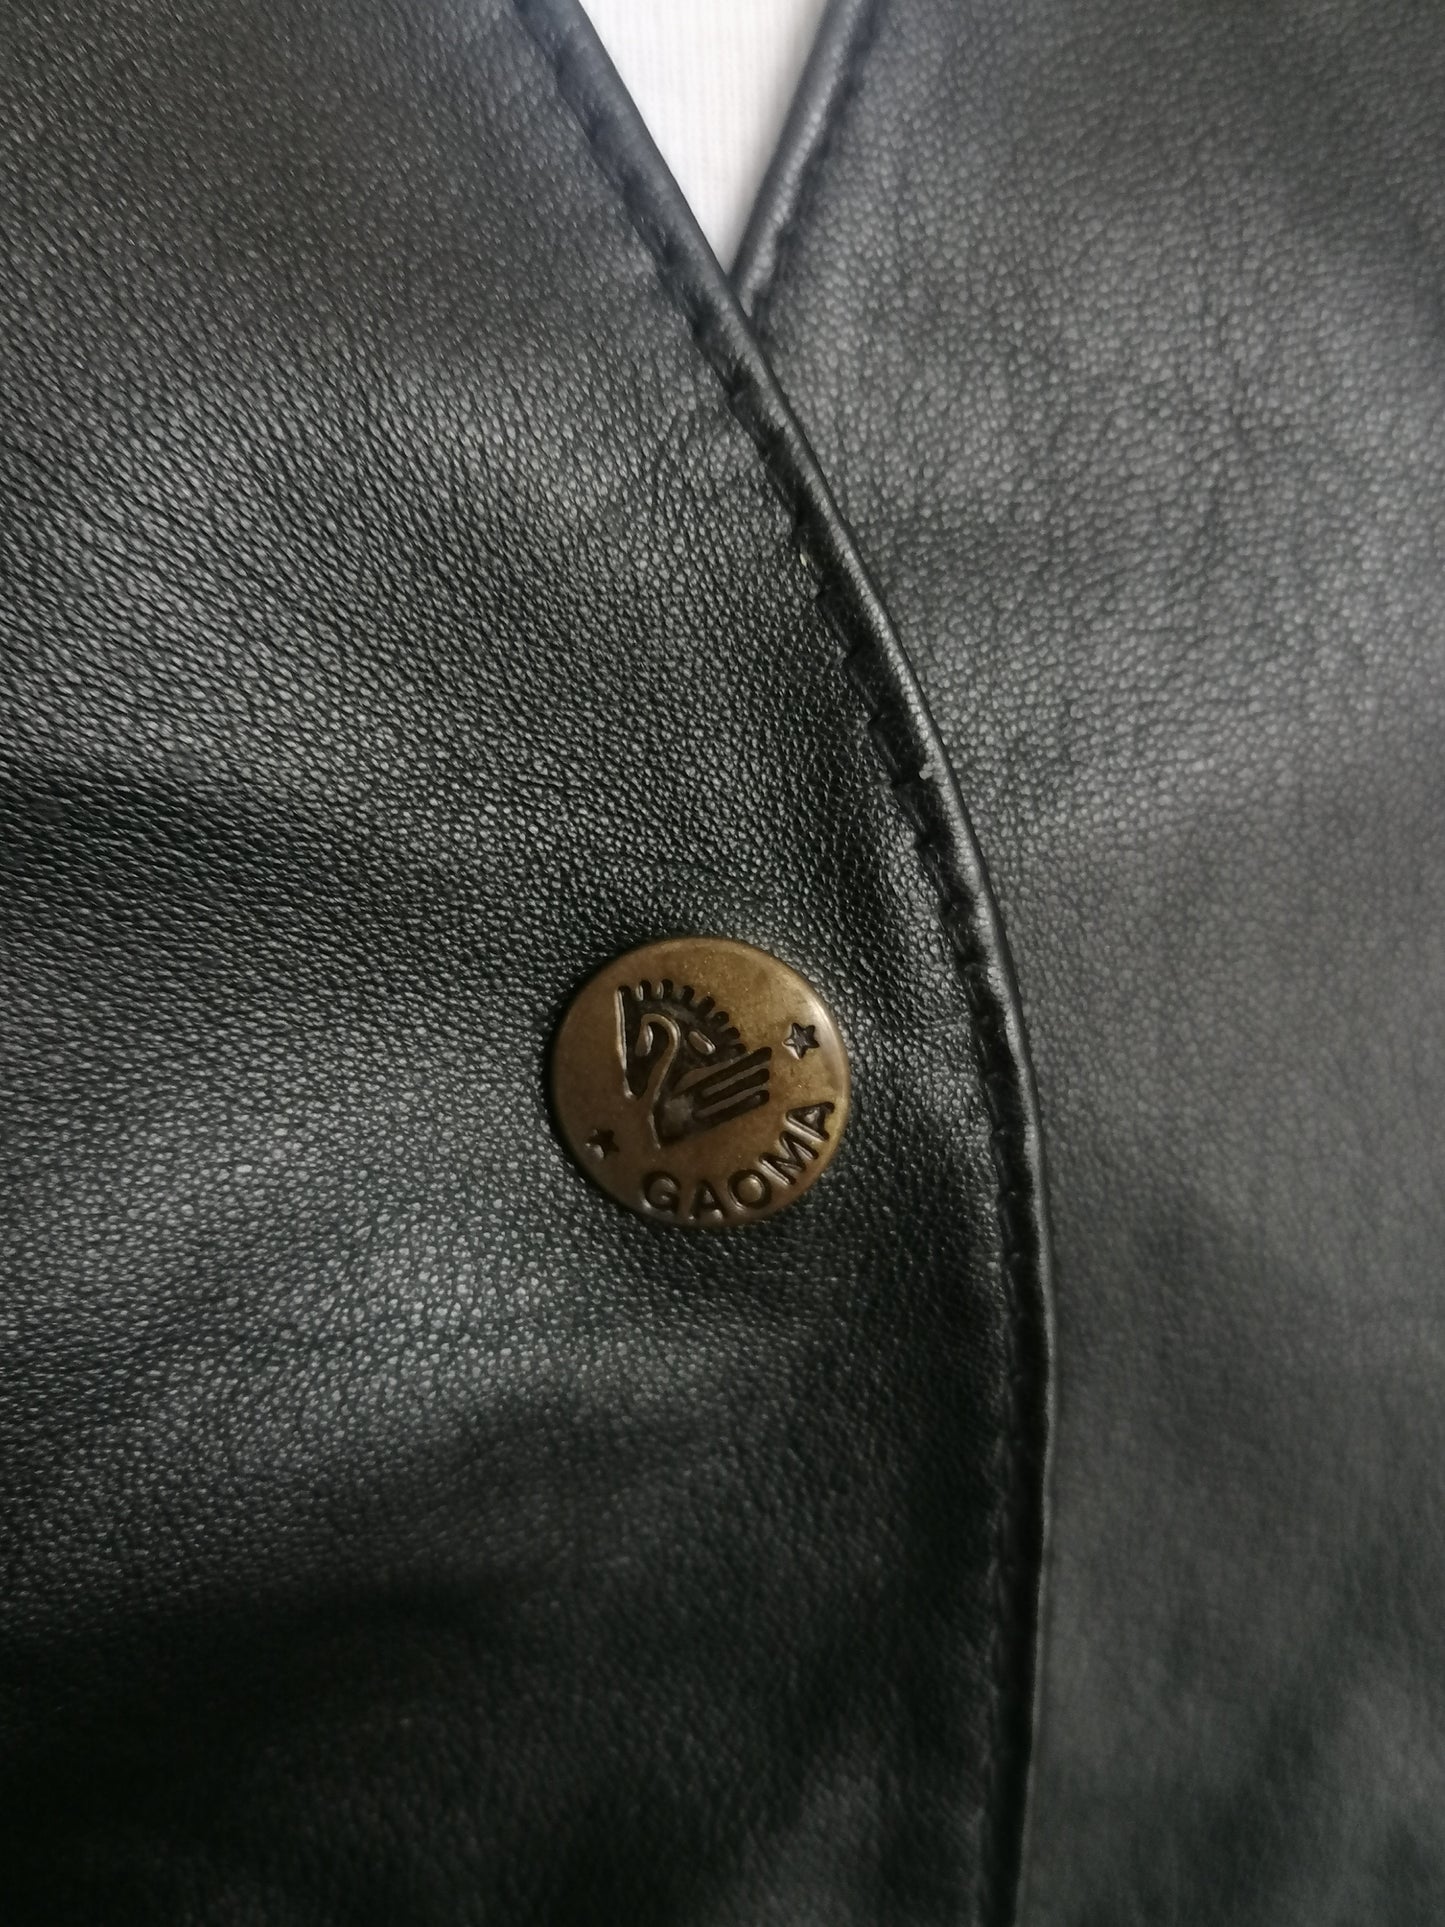 Washion Studio in pelle Wiistcoat con borchie. Colore nero. Taglia M.